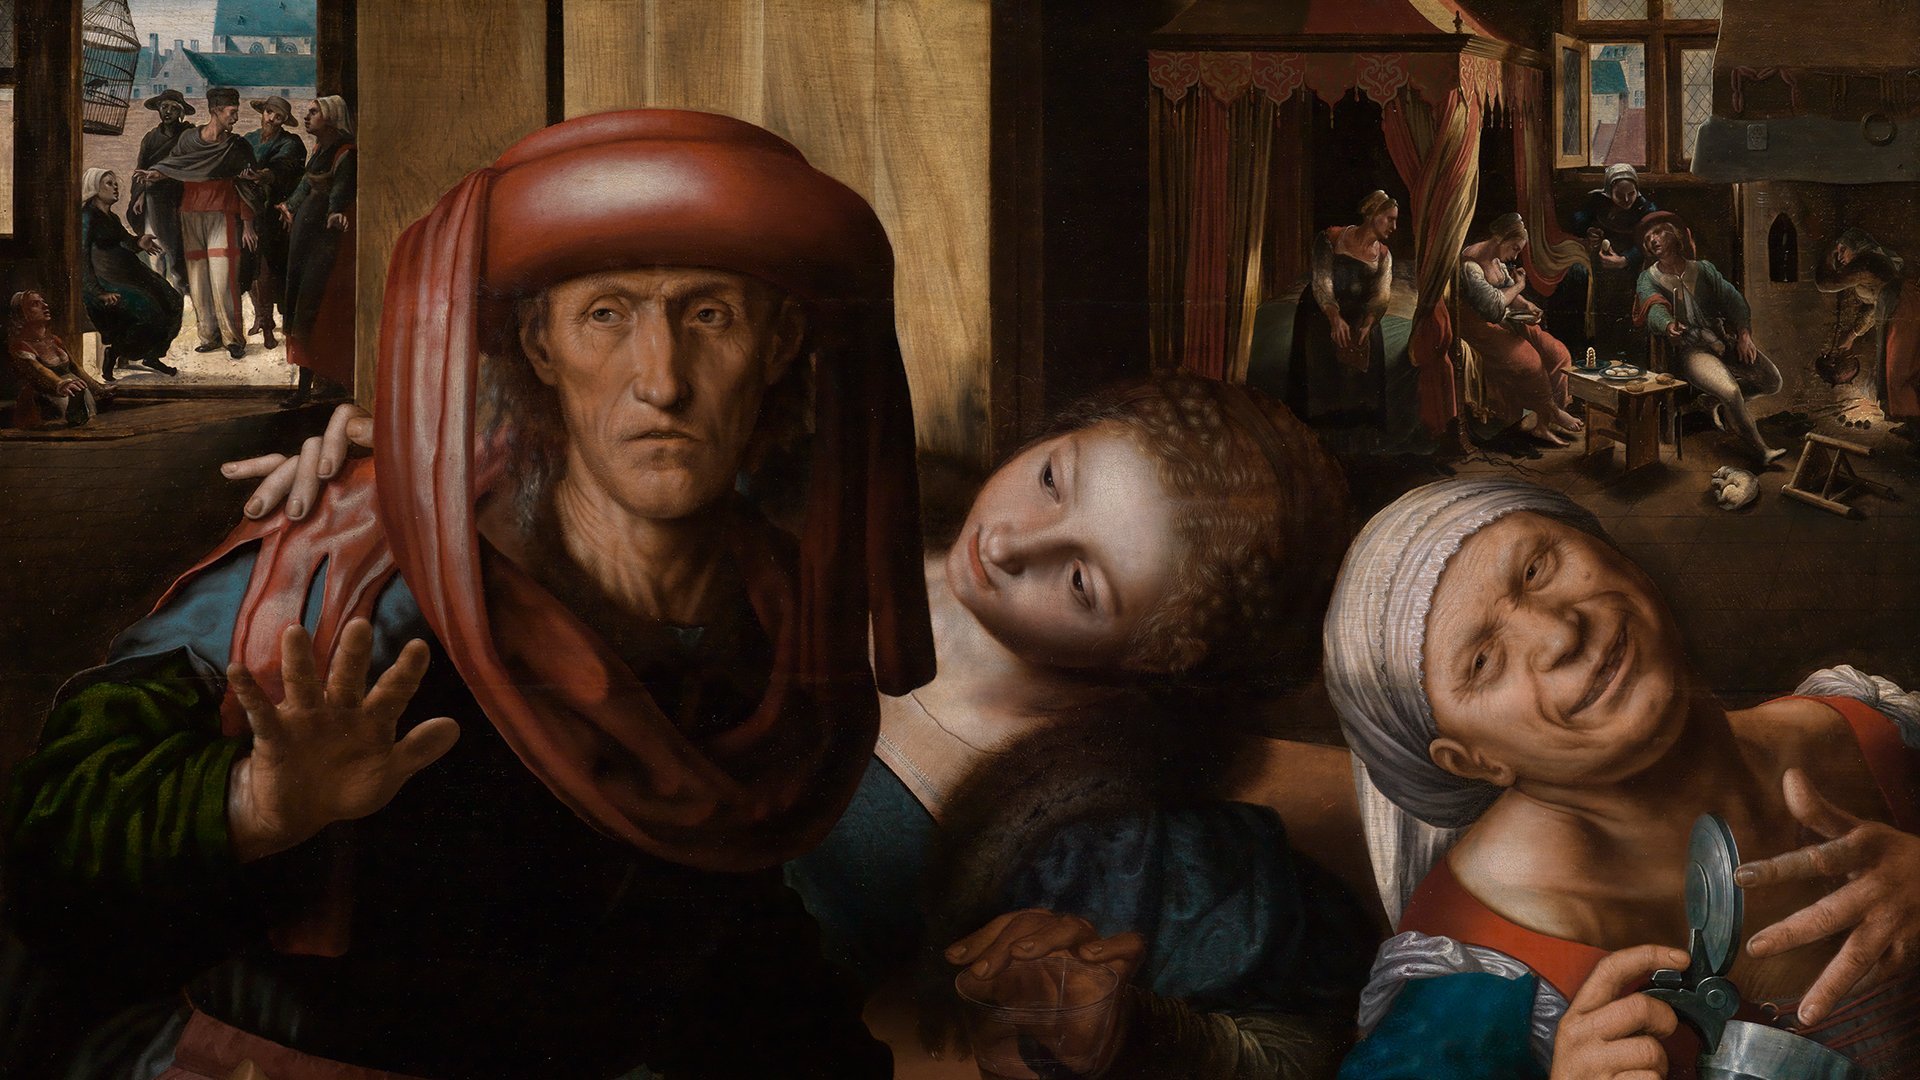 Detail des Werks Lockere Gesellschaft von Jan van Hemessen. es zeigt zwei Frauen und einen Mann. Der Mann trägt einen Hut. Eine Frau wendet sich dem Mann zu. Die andere Frau scheint betrunken. Im Hintergrund erkennt man eine Wirtshausszenerie mit weiteren Personen.